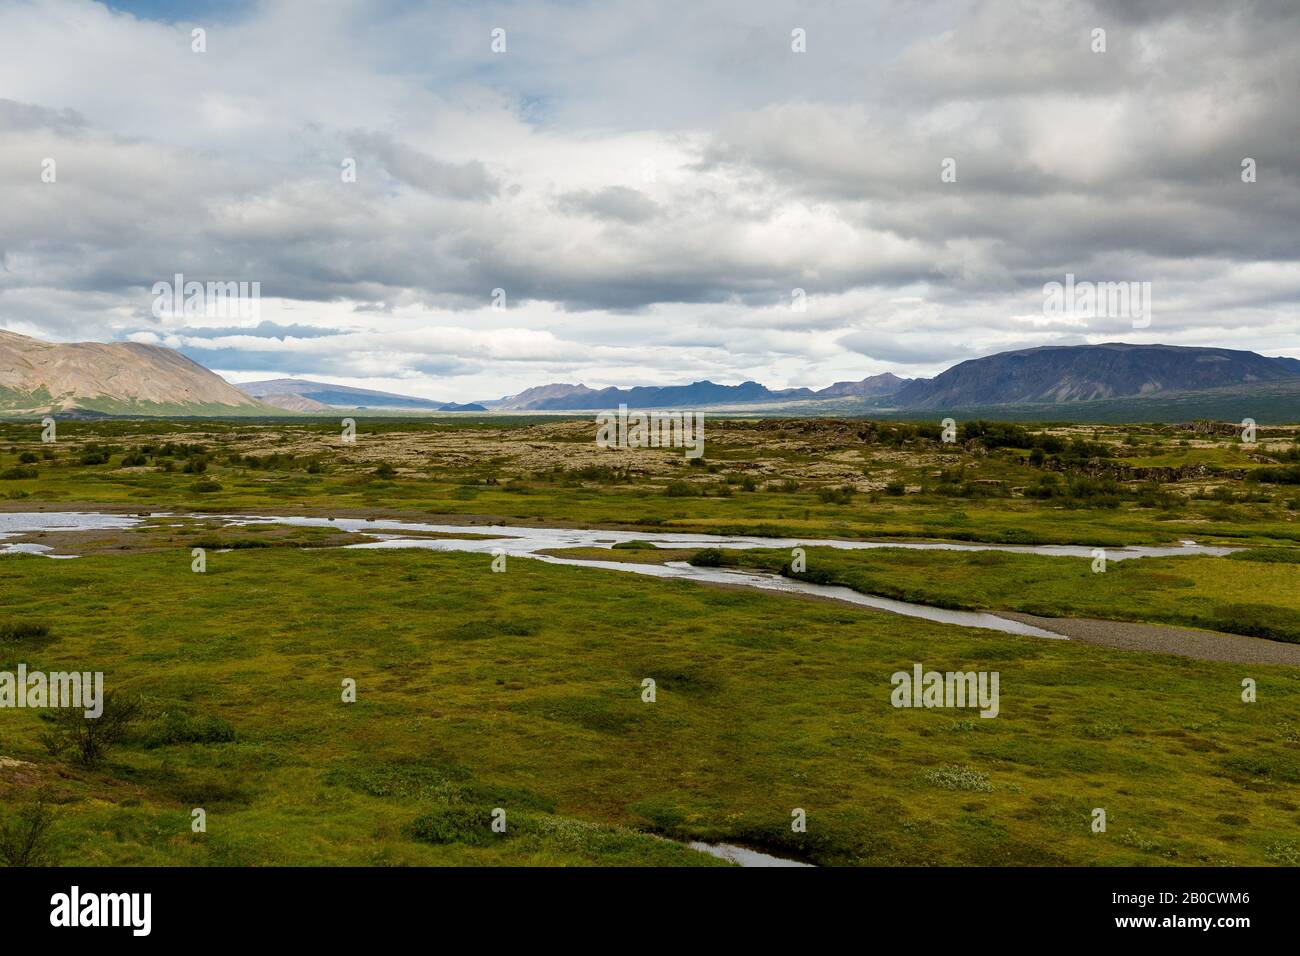 Þingvellir, Islande - la rupture entre l'Europe et l'Amérique du Nord des plaques continentales. Les plaques tectoniques convergent en Islande Banque D'Images